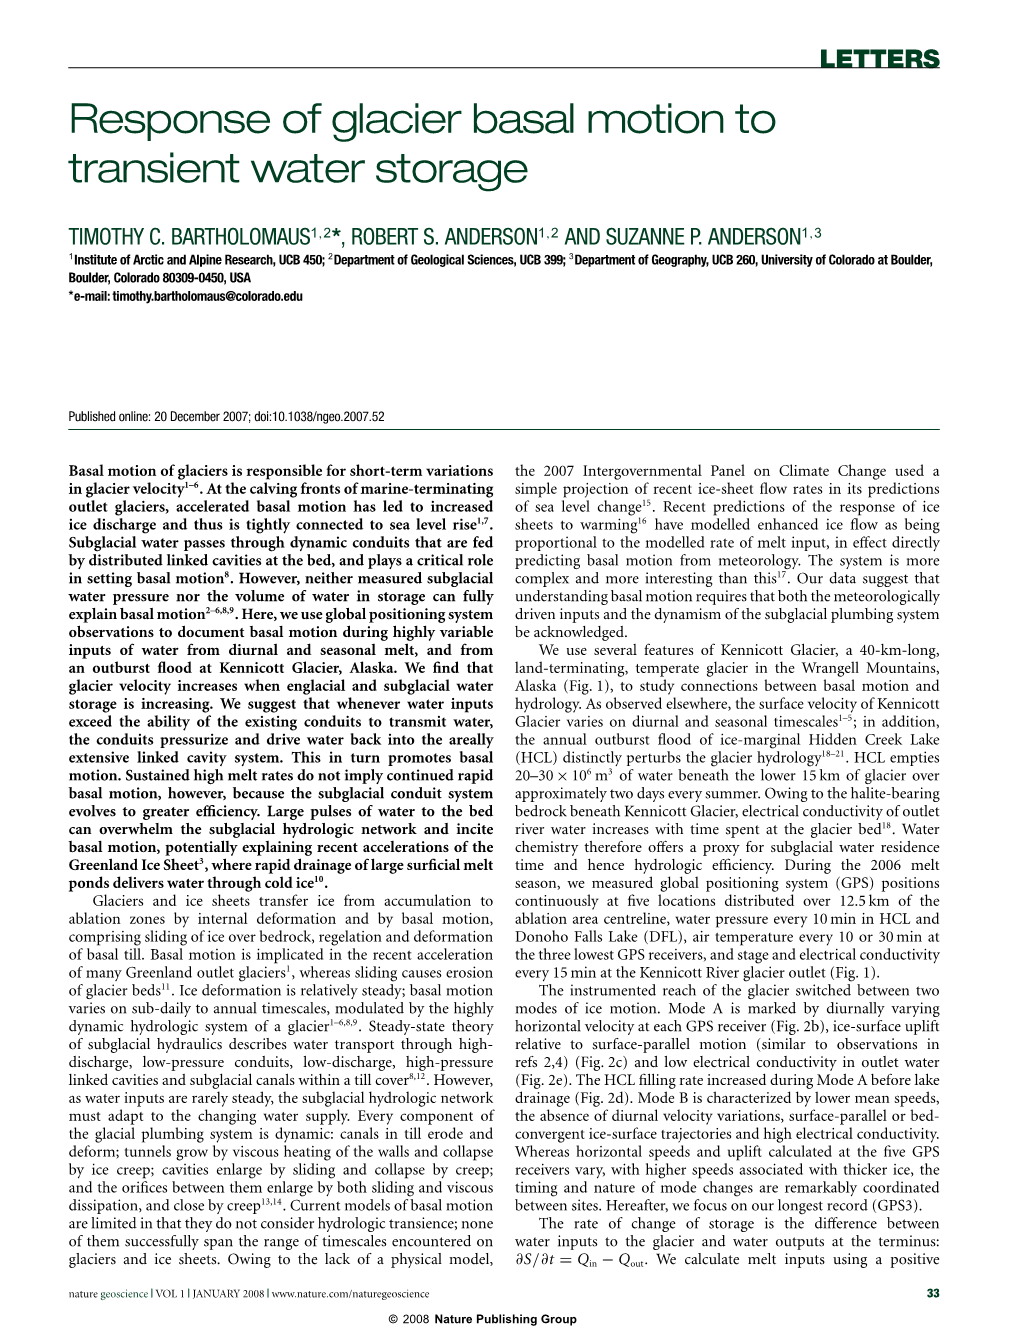 Response of Glacier Basal Motion to Transient Water Storage